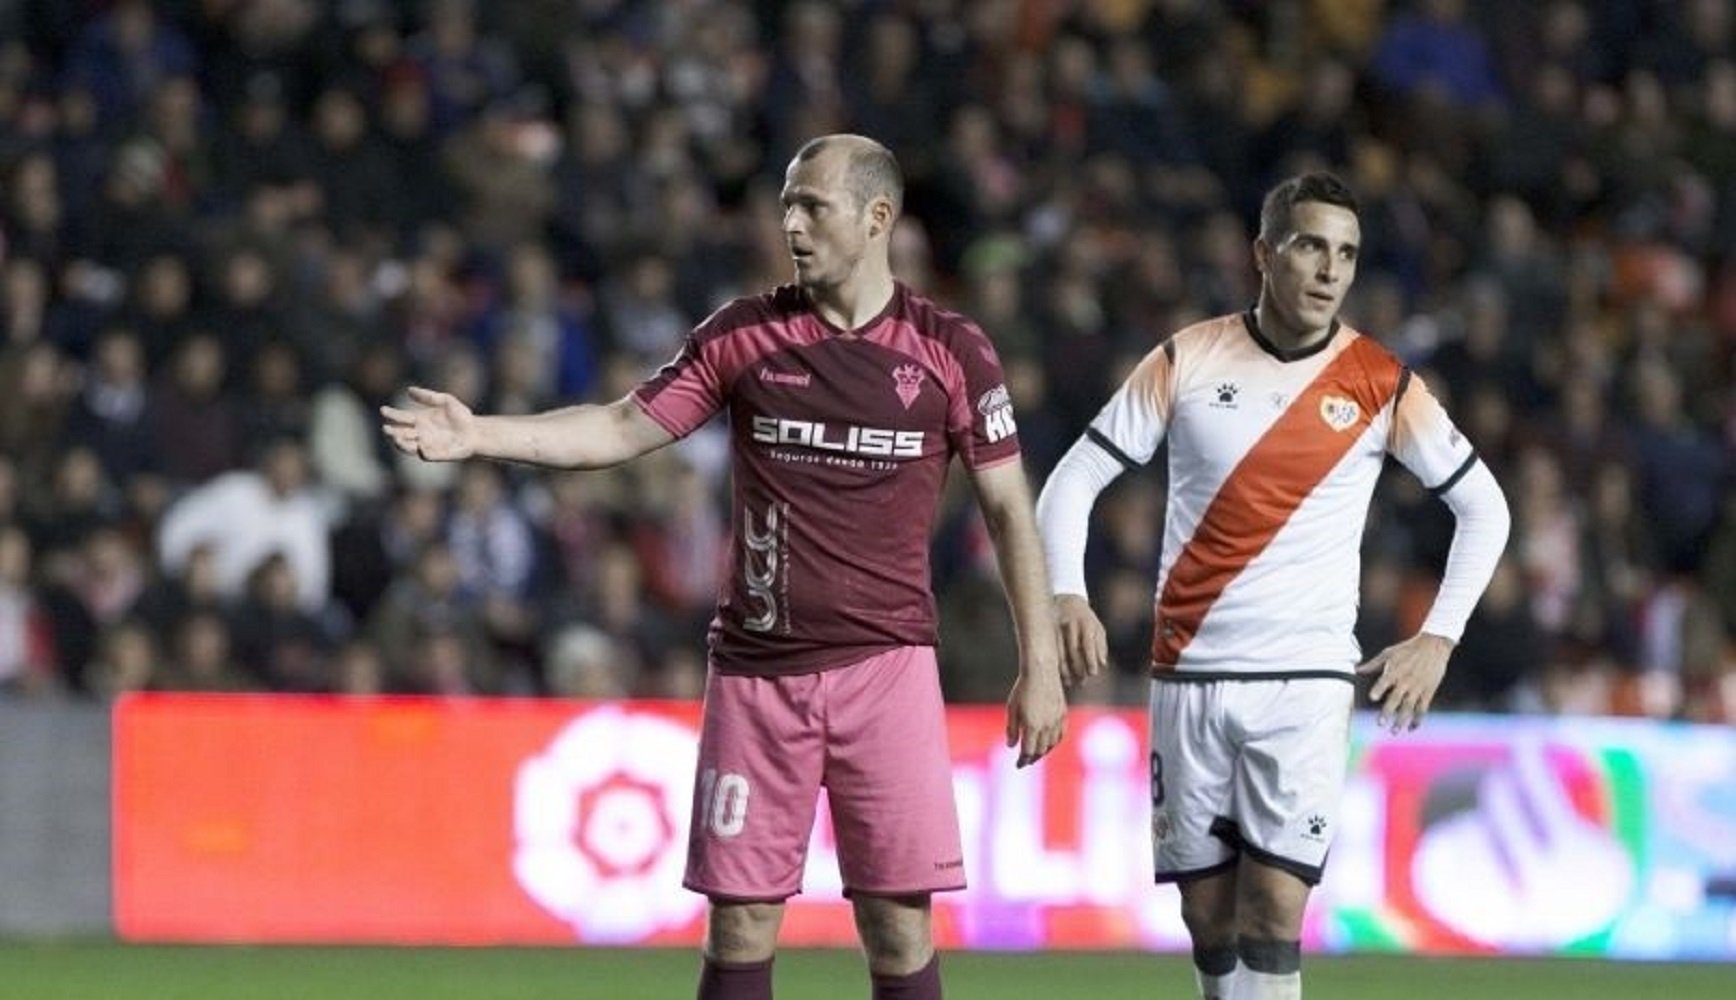 Les declaracions homòfobes del futbolista de l'Albacete titllat de "nazi"